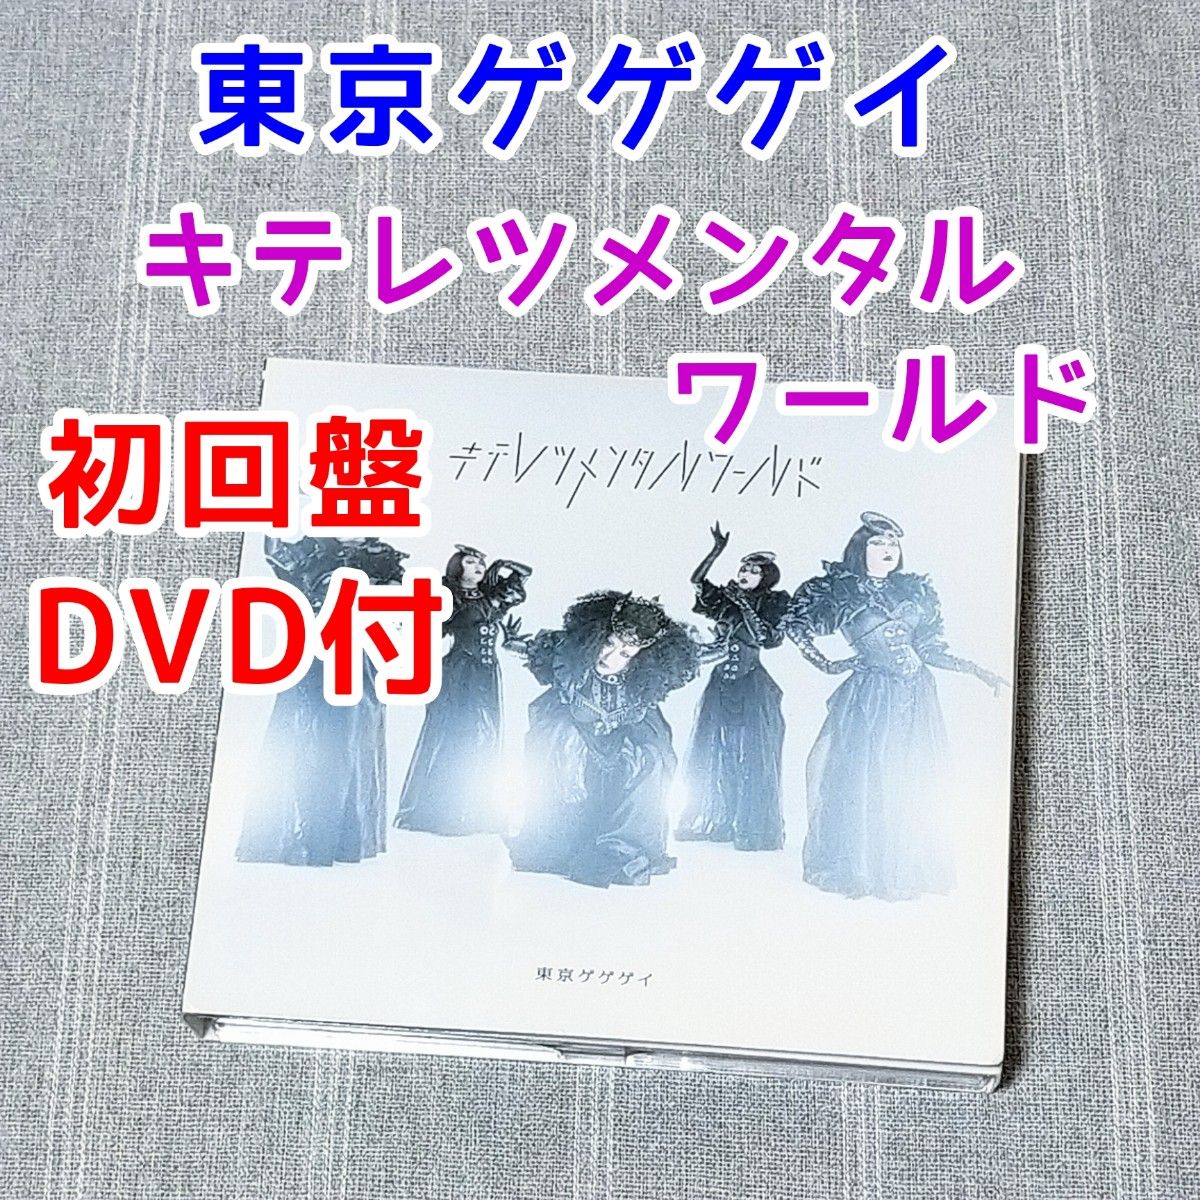 特別価格 東京ゲゲゲイ キテレツパラレルワールド初回盤 東京ゲゲゲイ歌 CD